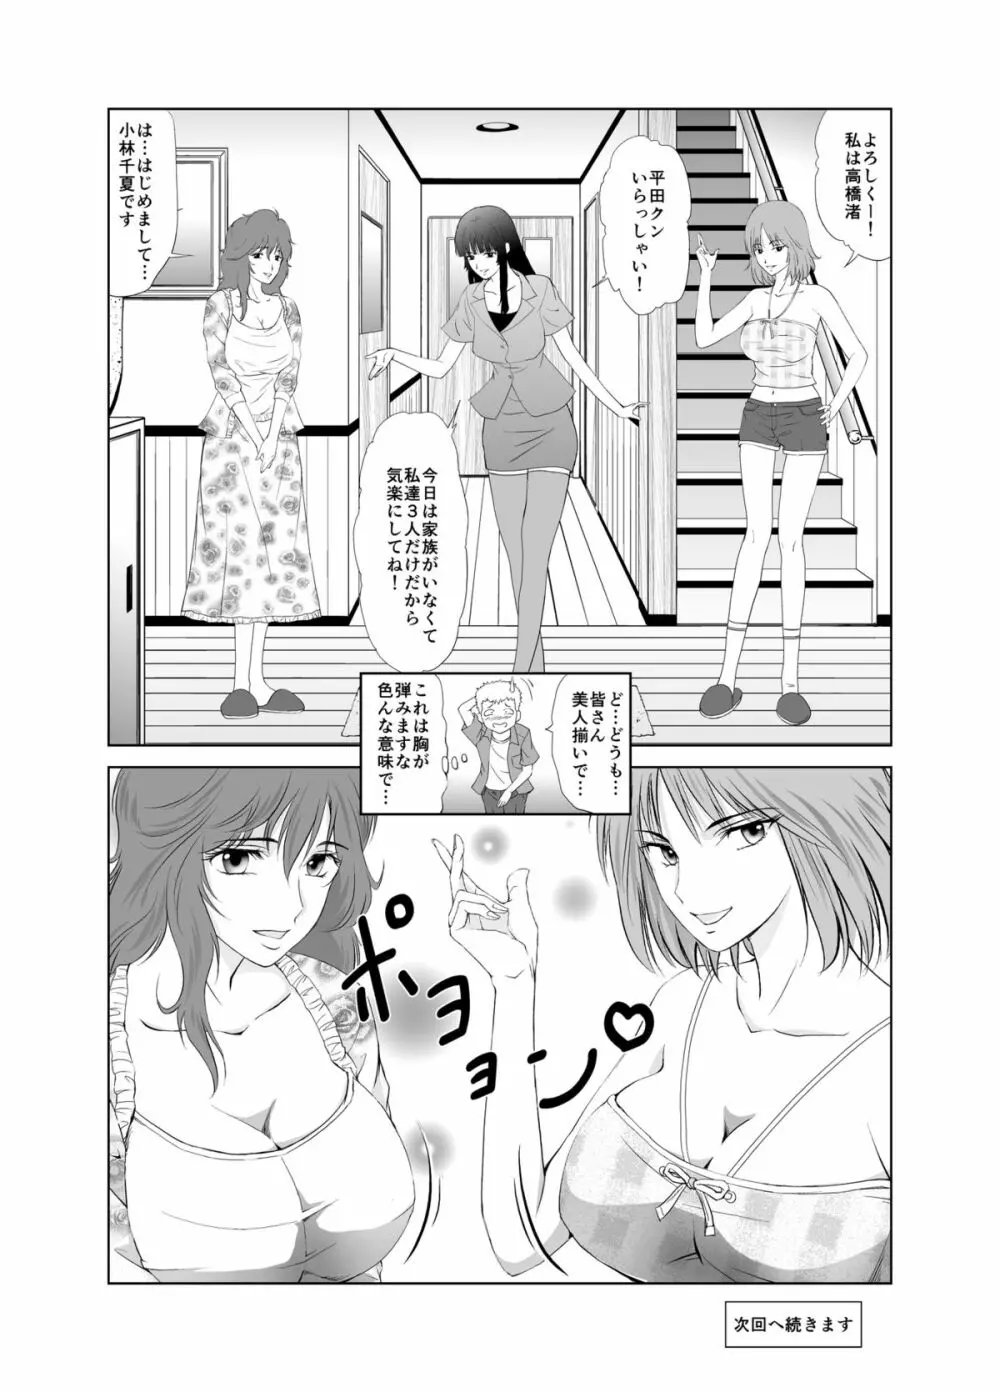 脱衣麻雀～漫画編～【完成版】 Page.6